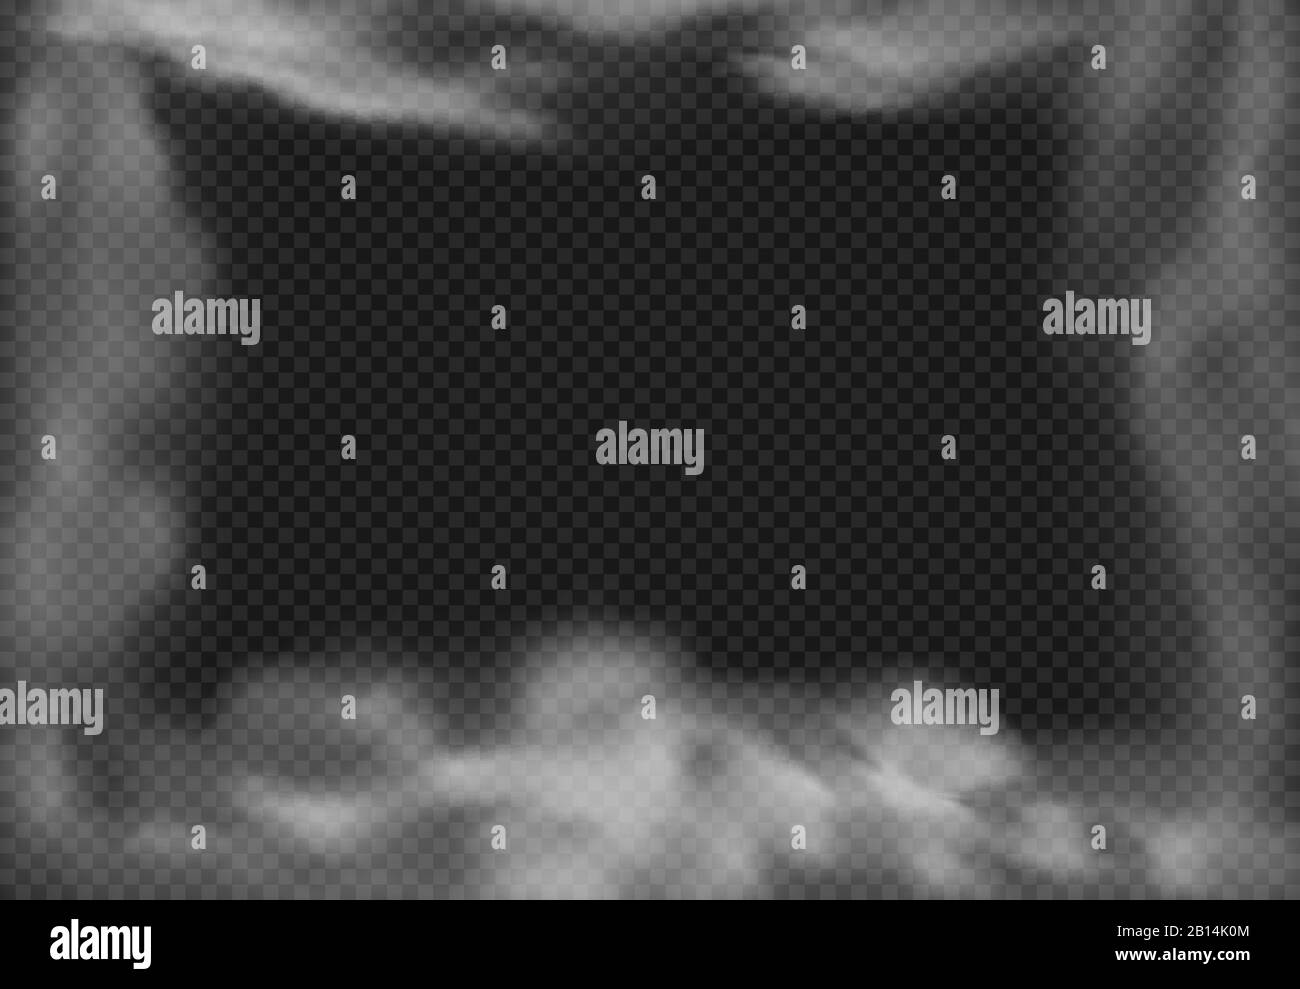 Fotogramma nuvoloso. Nebbia fumosa, effetto fumo e nubi nebulose realistiche immagine vettoriale isolata Illustrazione Vettoriale